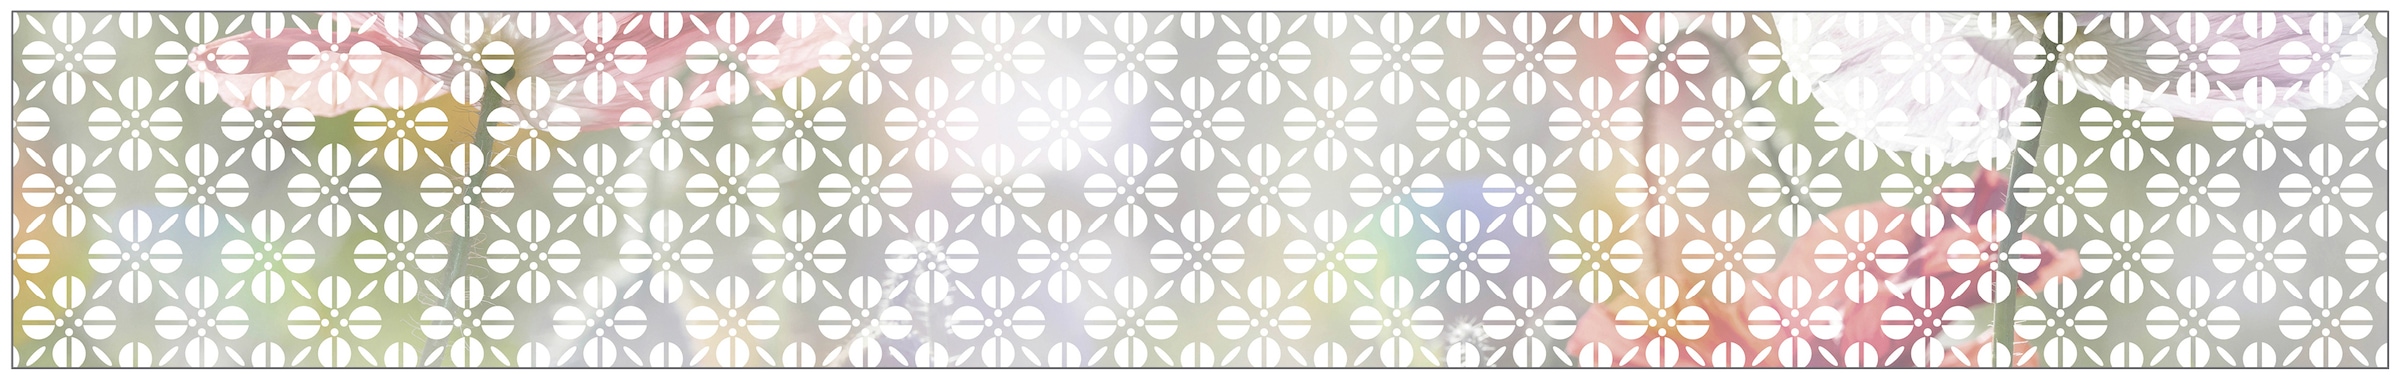 MySpotti Fensterfolie »Look Grafik Blumenmuster white«, halbtransparent, glattstatisch haftend, 200 x 30 cm, statisch haftend